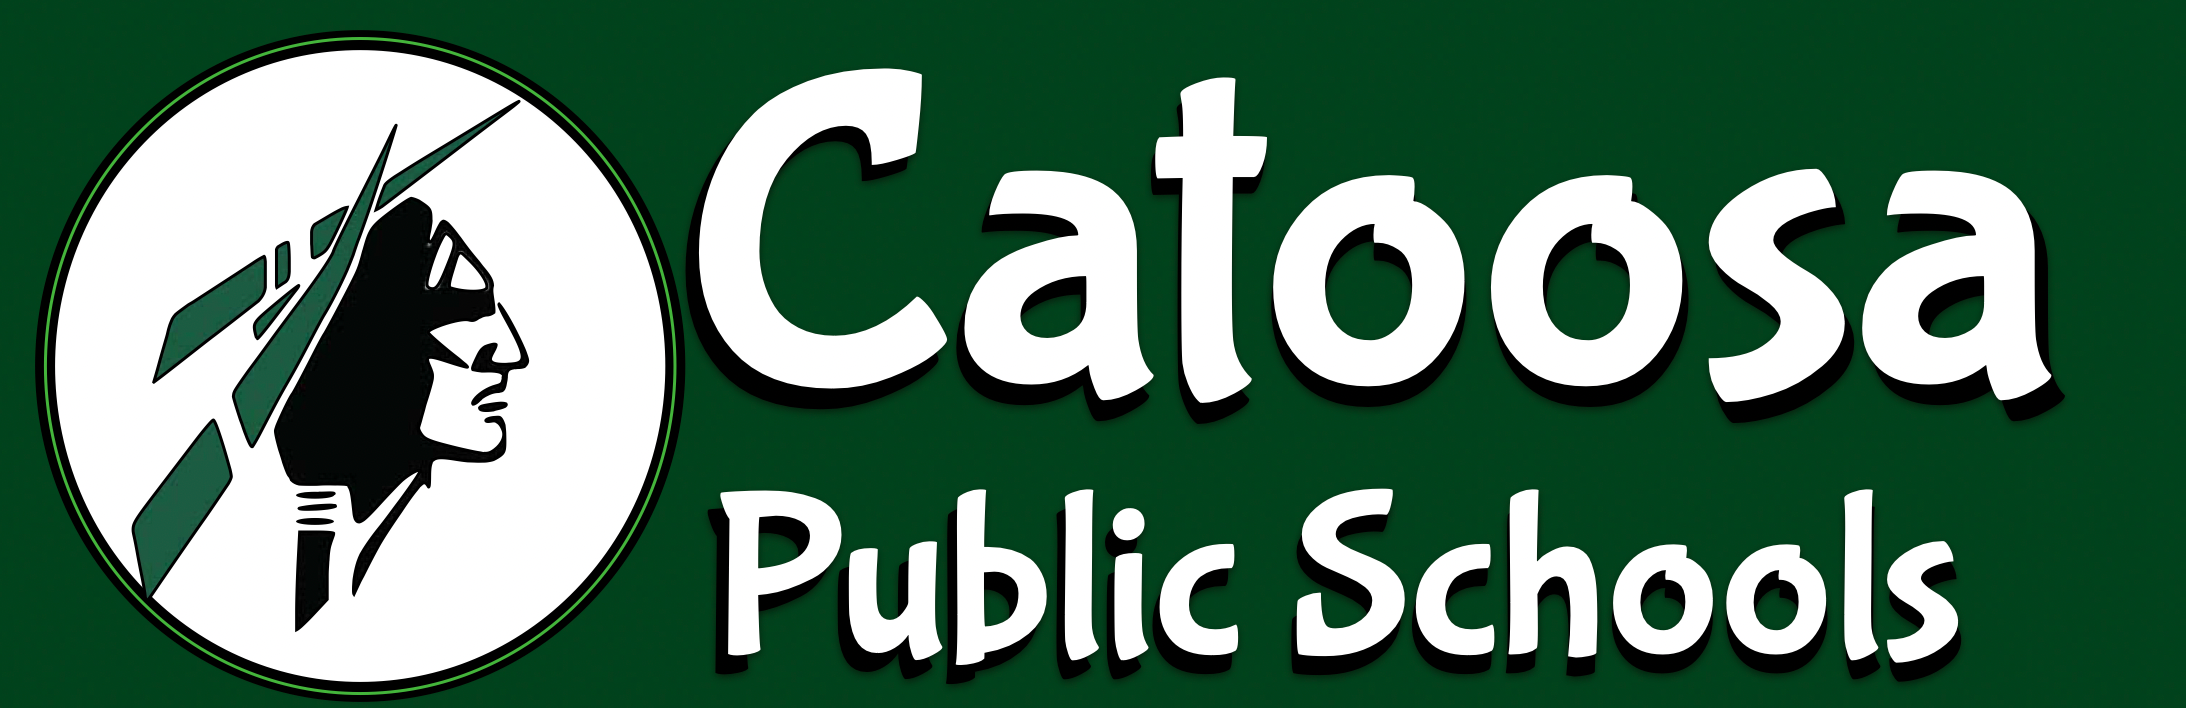 calendar-catoosa-public-schools